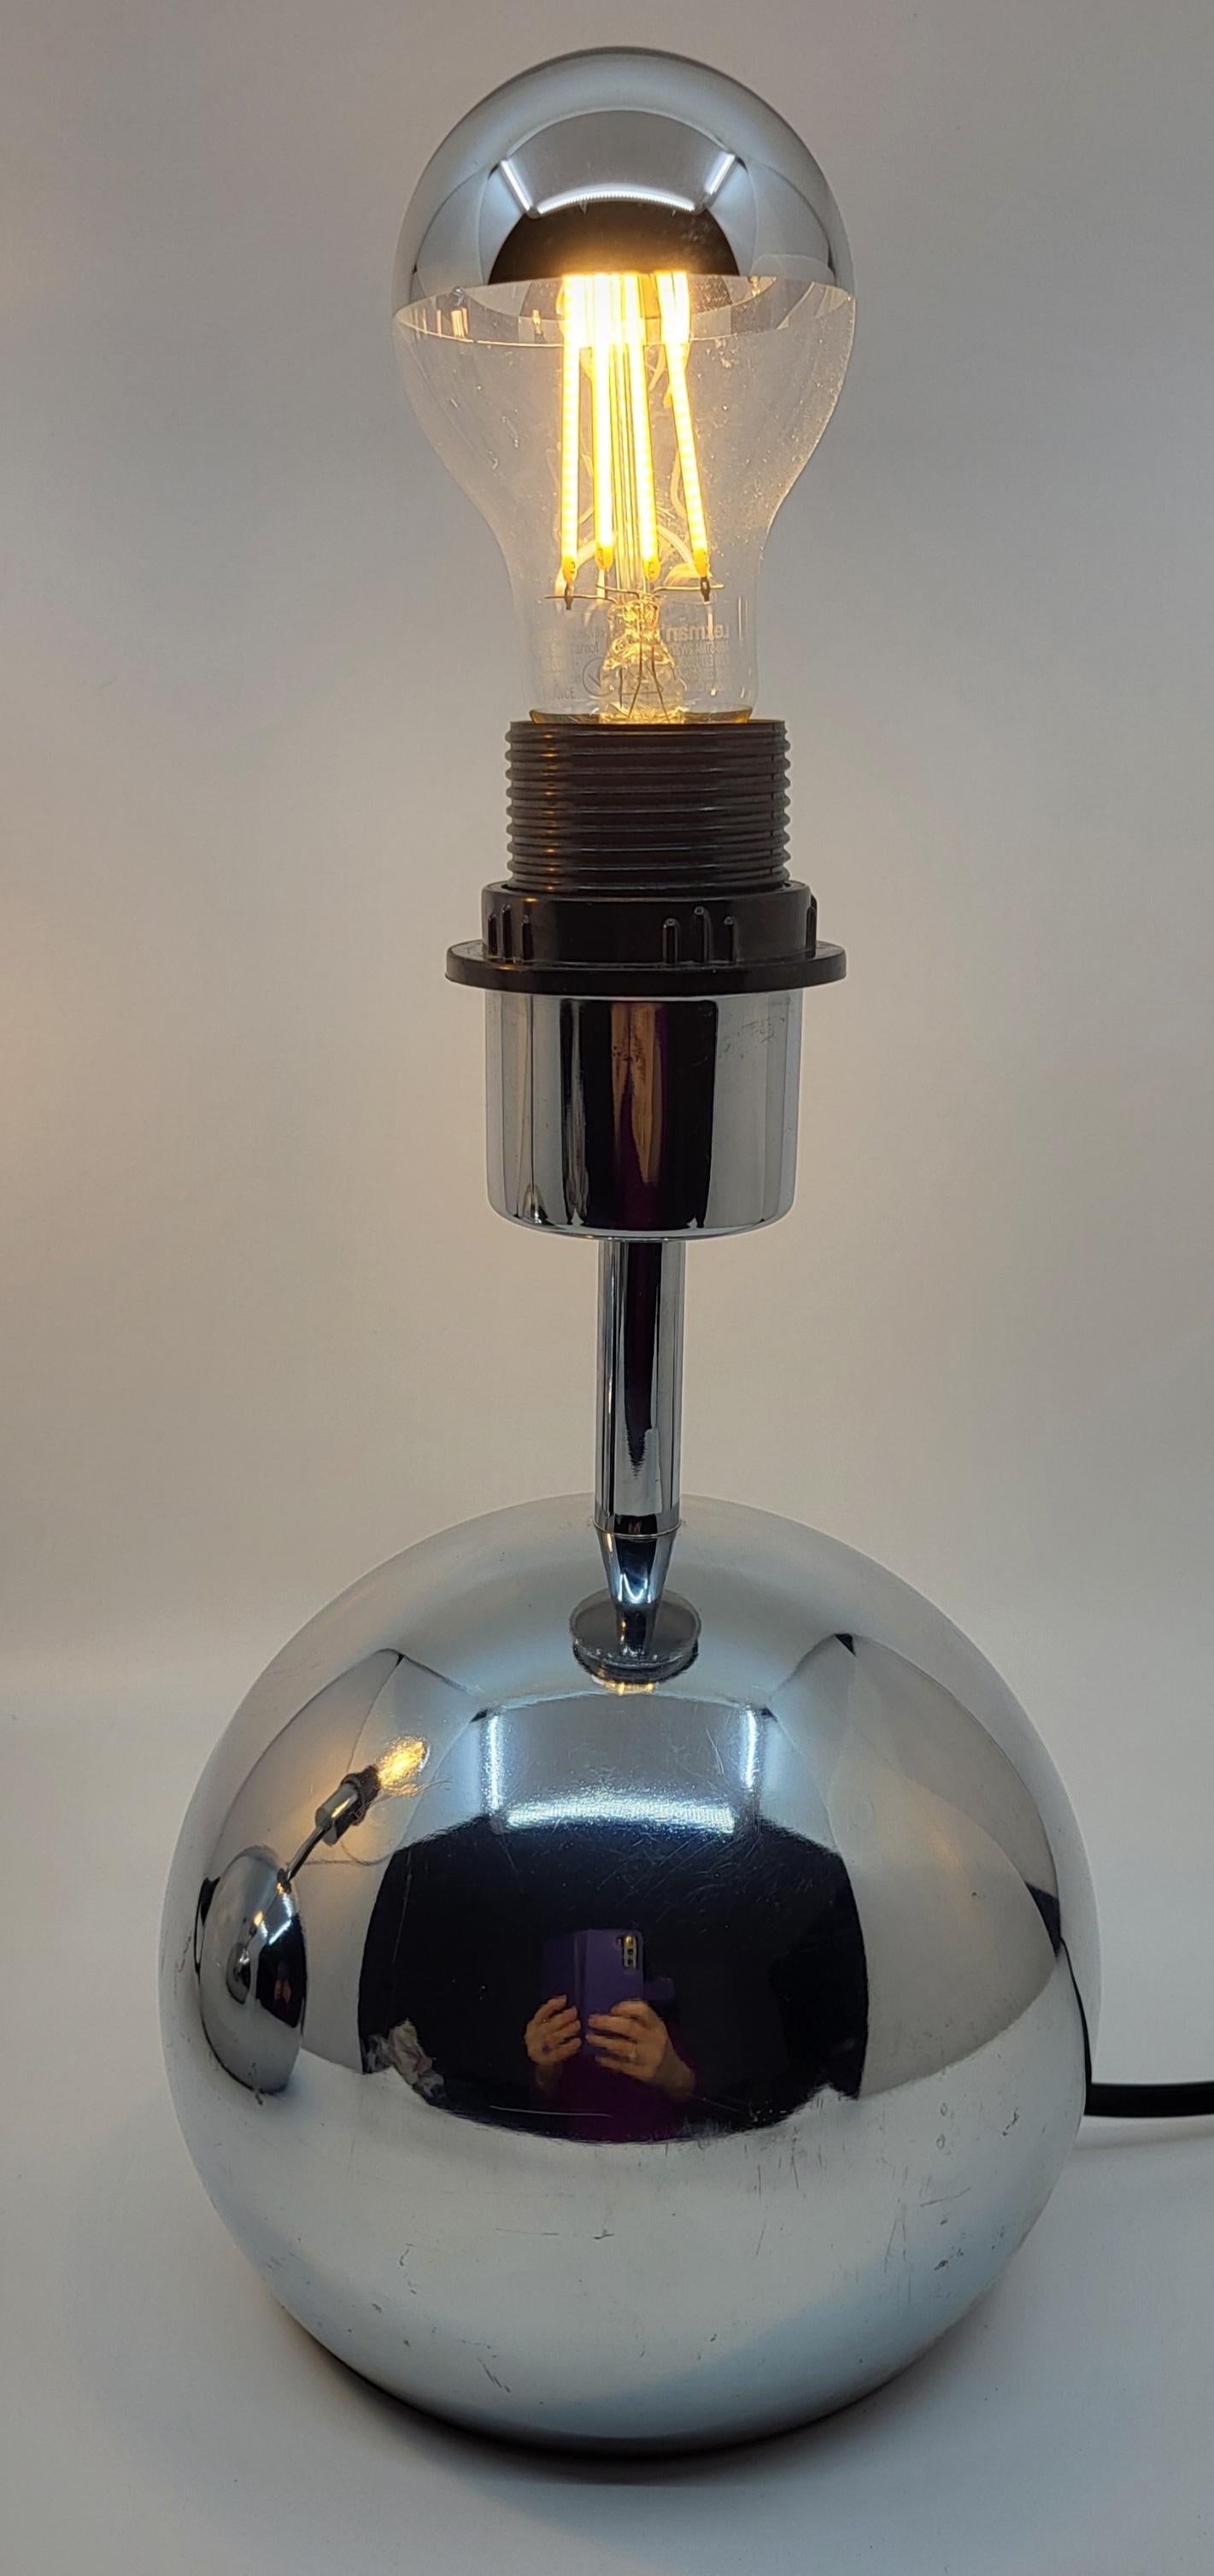 Duo de lampes boule en inox chromées, à poser dans votre chambre ou le salon. L'inox étant un matériaux plus qualitatif que l'aluminium.
 Elles sont présentées avec une ampoule couleur aluminium, mais vous pouvez également opter pour différents